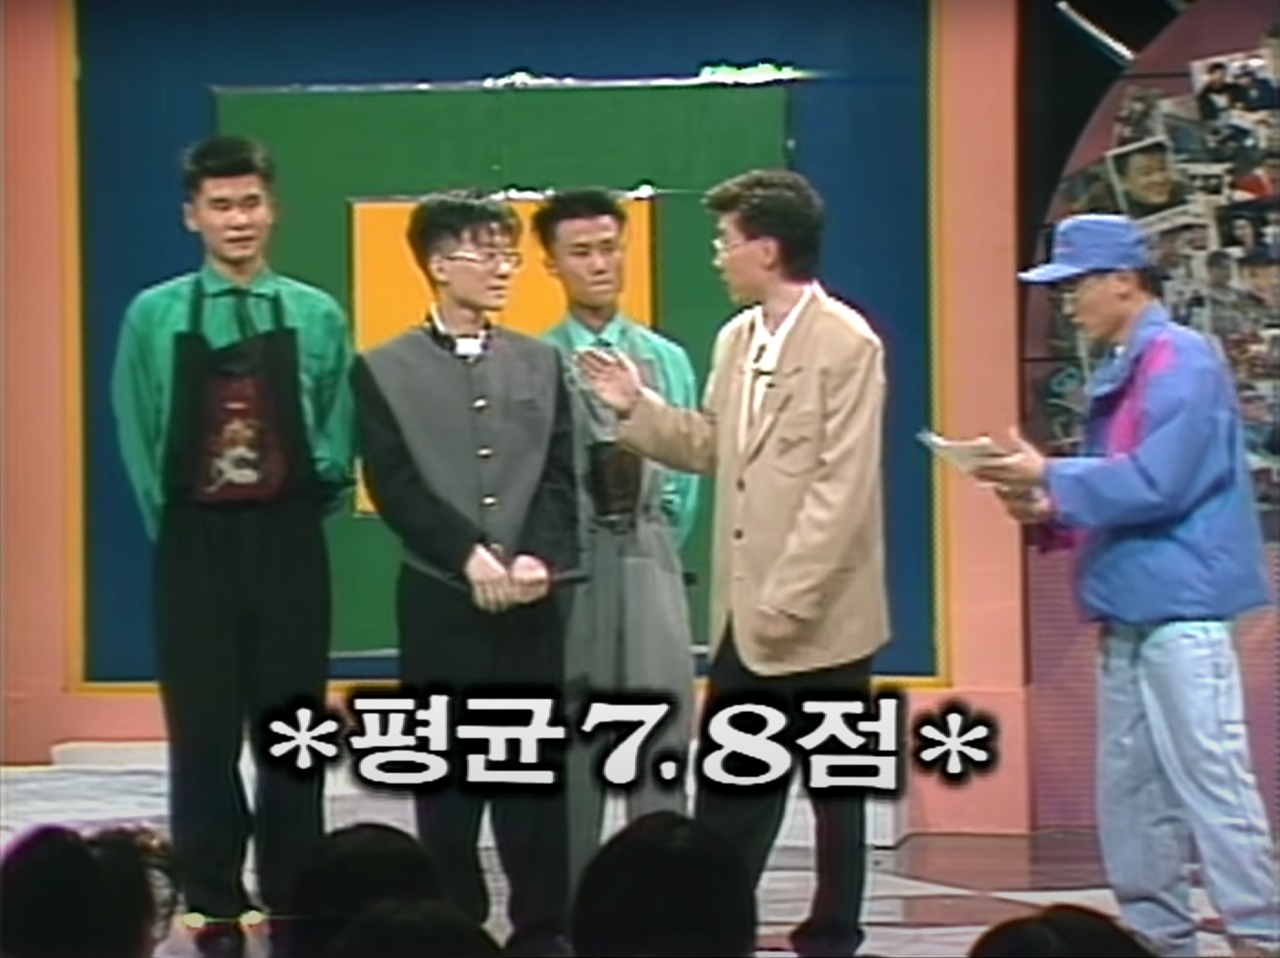  1992년 4월 11일 특종 TV 연예에서 첫 무대를 선 보인 <서태지와 아이들>